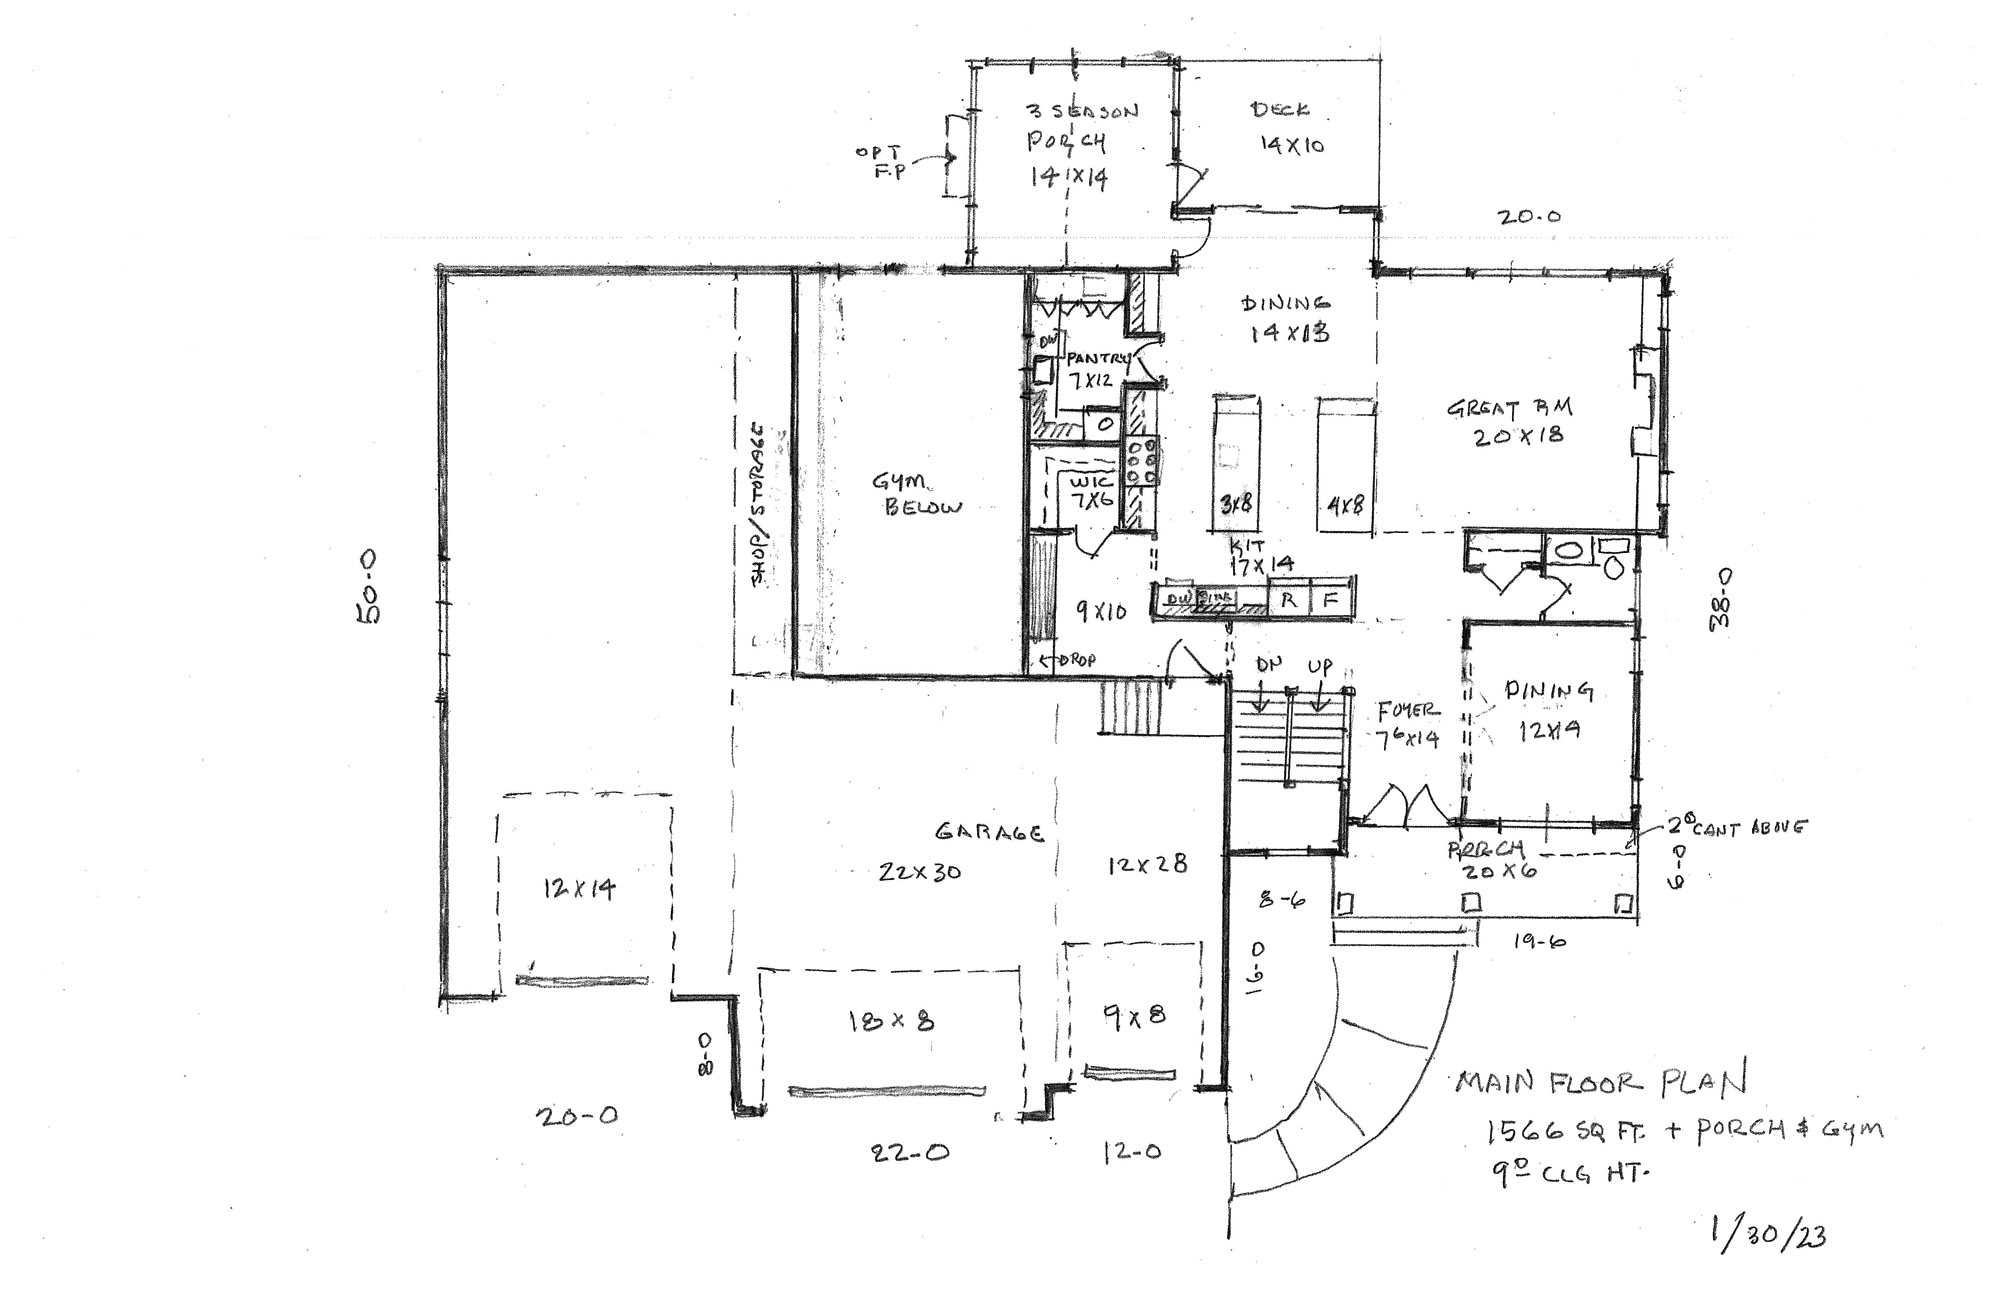 Michelle RV Garage Home Plan Main Floor Plan